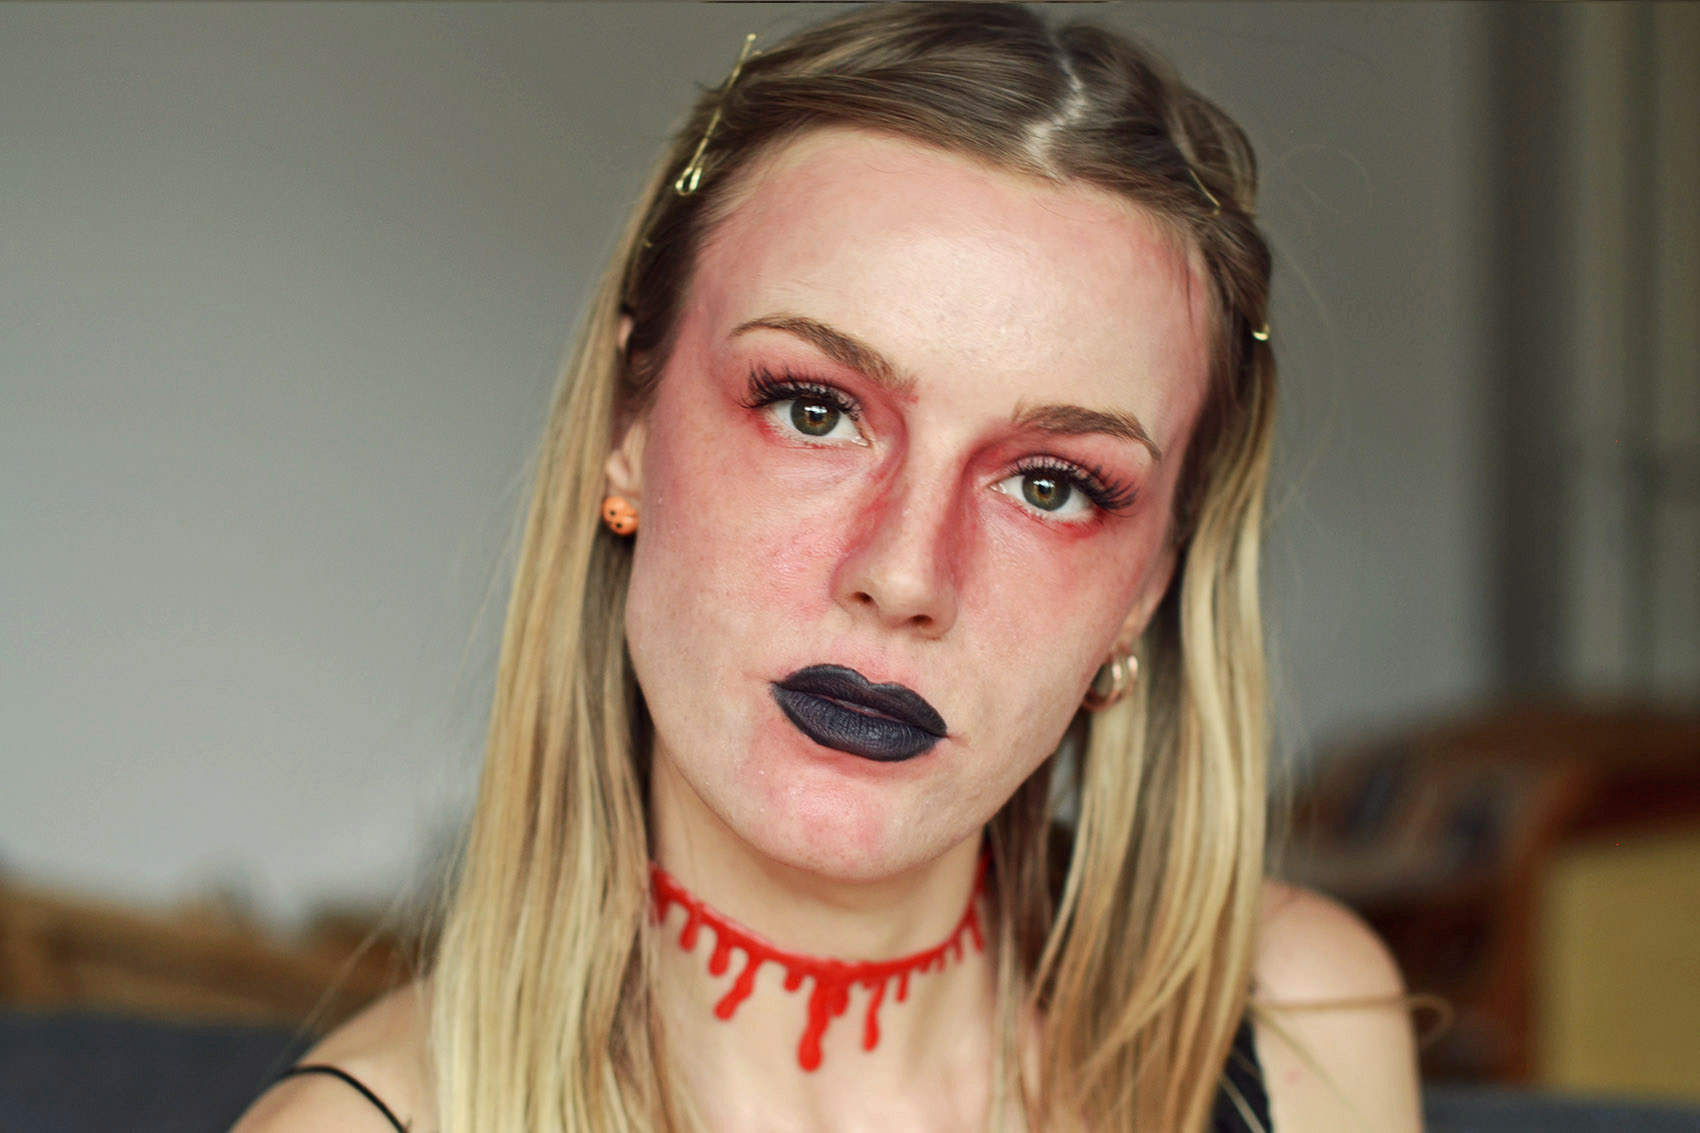 halloween, make up, tutorial, schminken